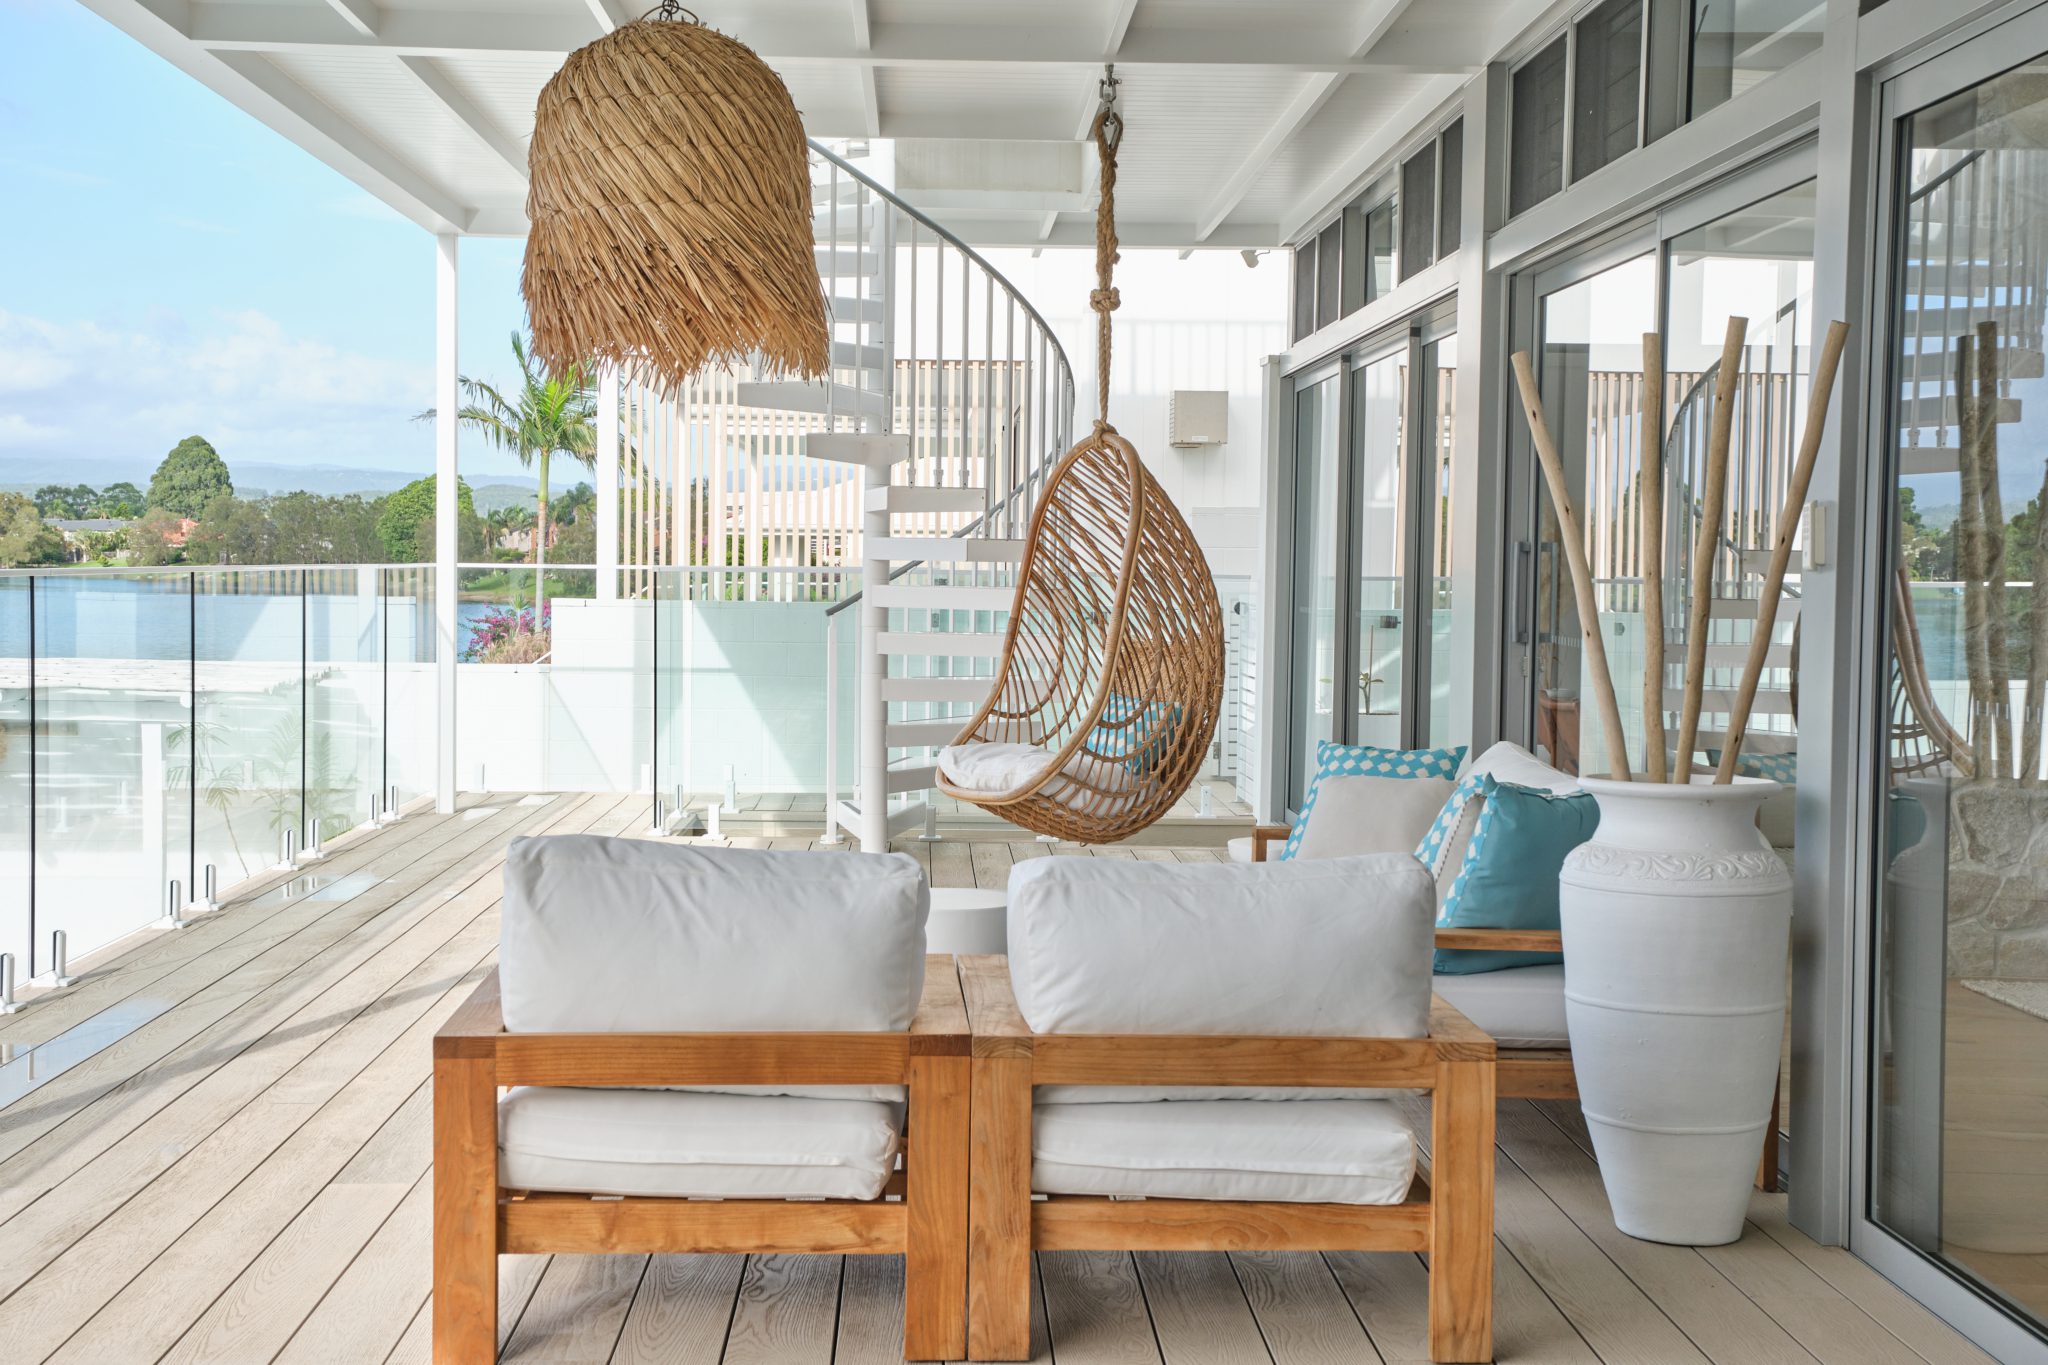 Selamanya Burleigh – Luxury Coastal Resort Style House in Burleigh